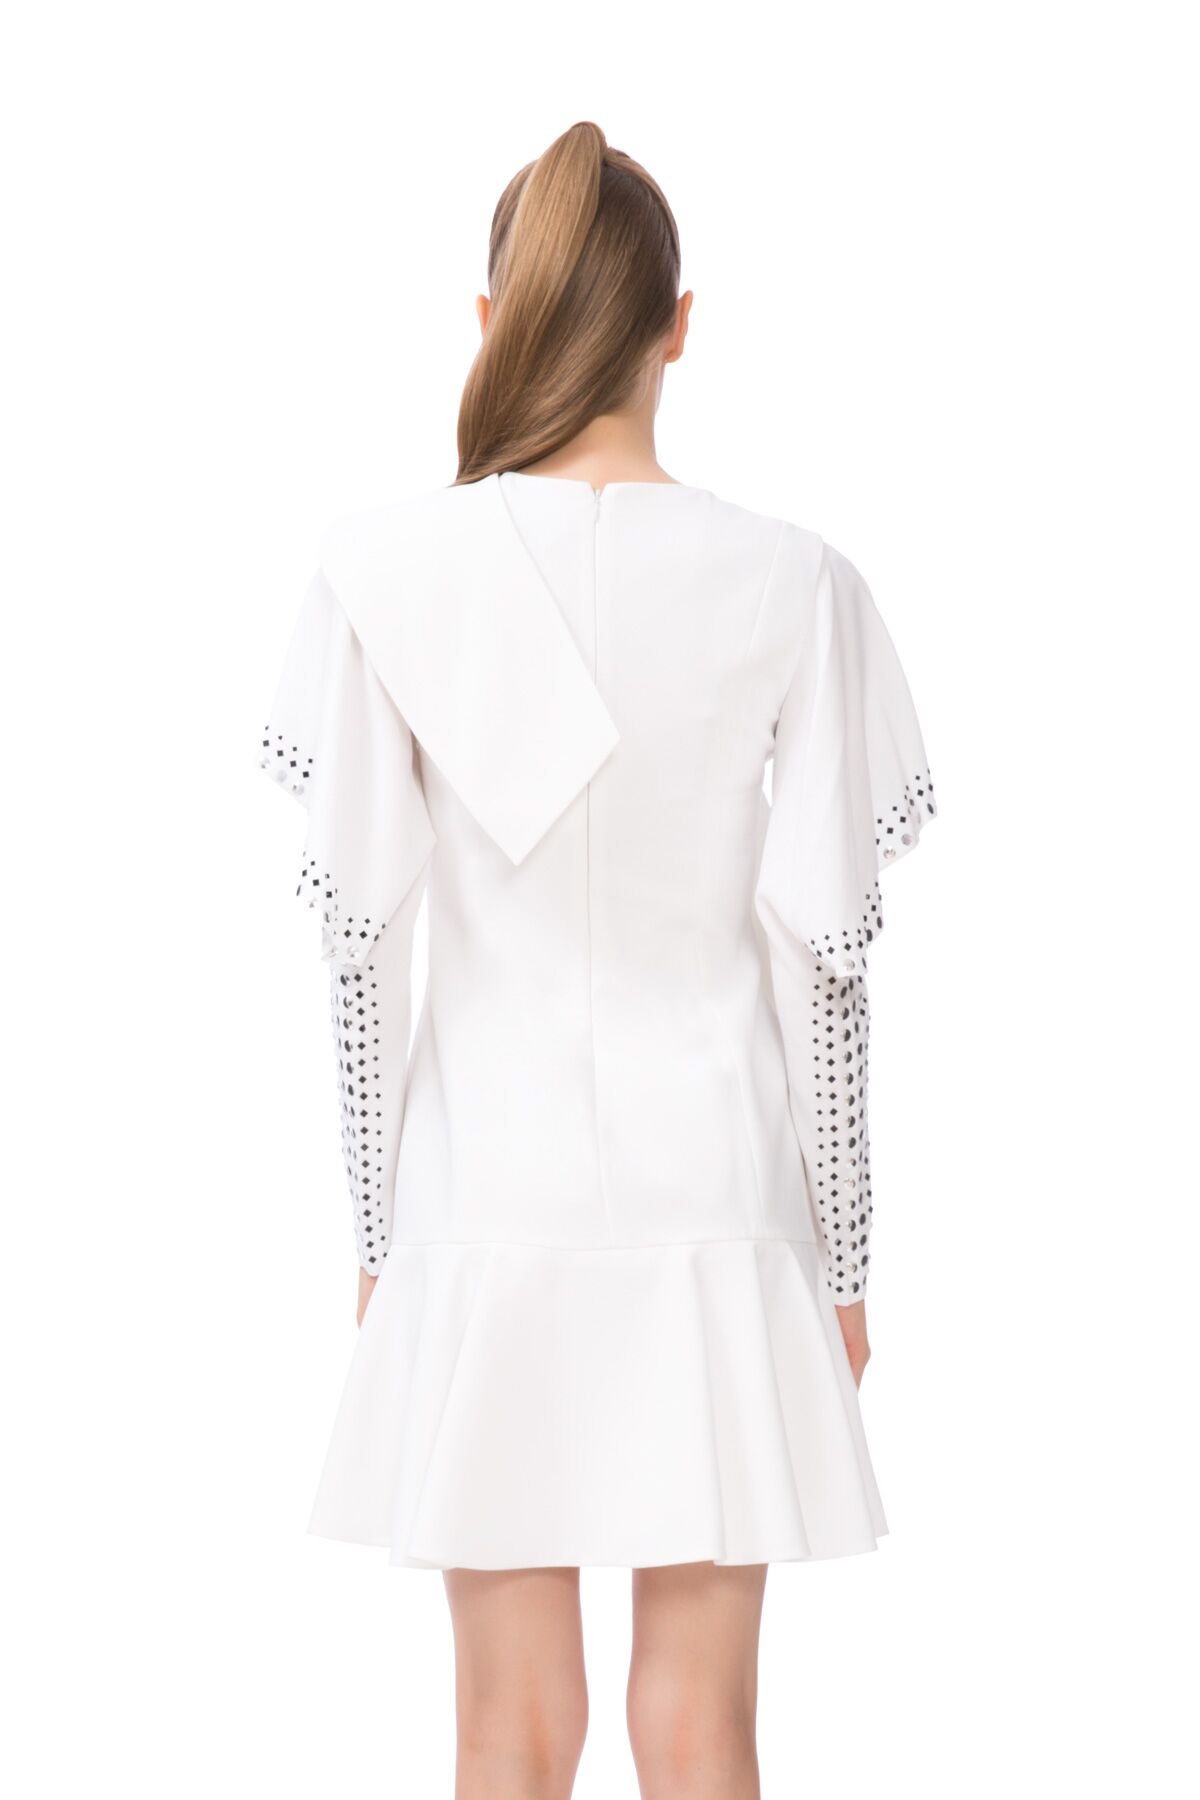 Kol Kısmı Trok Baskı Detaylı Beyaz Mini Elbise